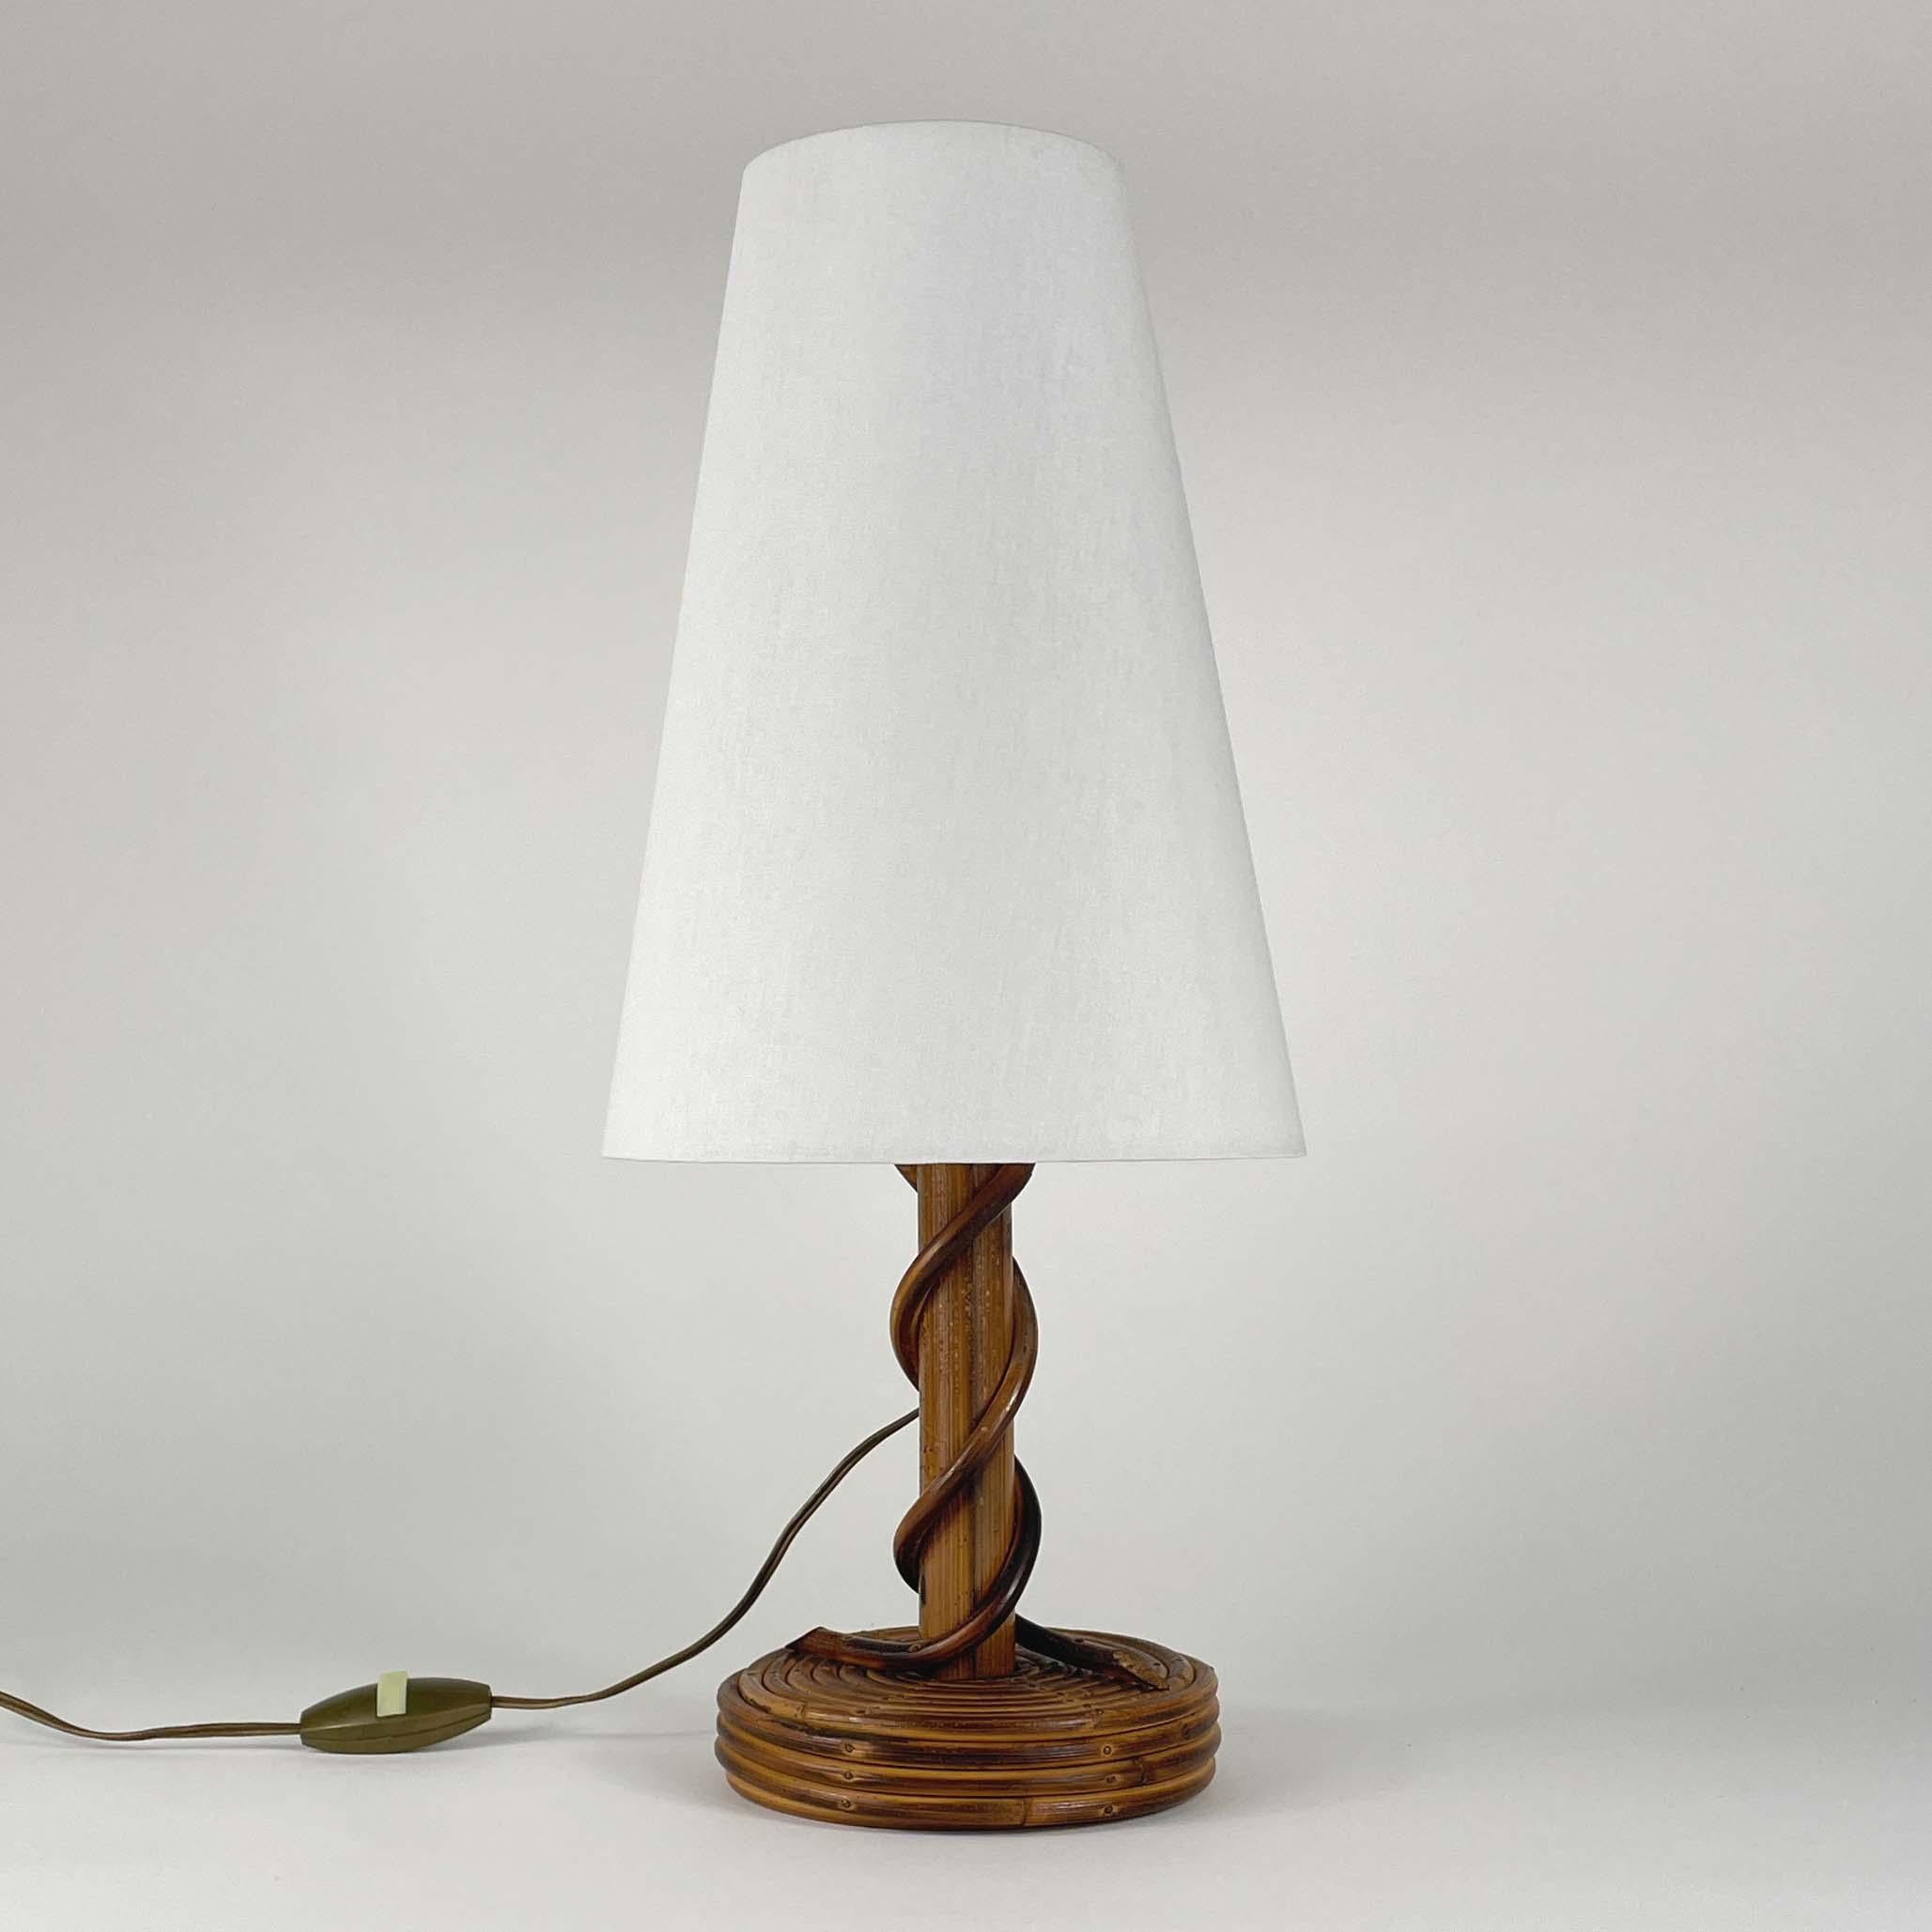 Cette magnifique lampe de table a été conçue et fabriquée par Louis Sognot en France dans les années 1950. Whiting se compose d'une base en bambou et en rotin et d'un abat-jour conique à pince blanc cassé. L'abat-jour a été remis à neuf.

La lampe